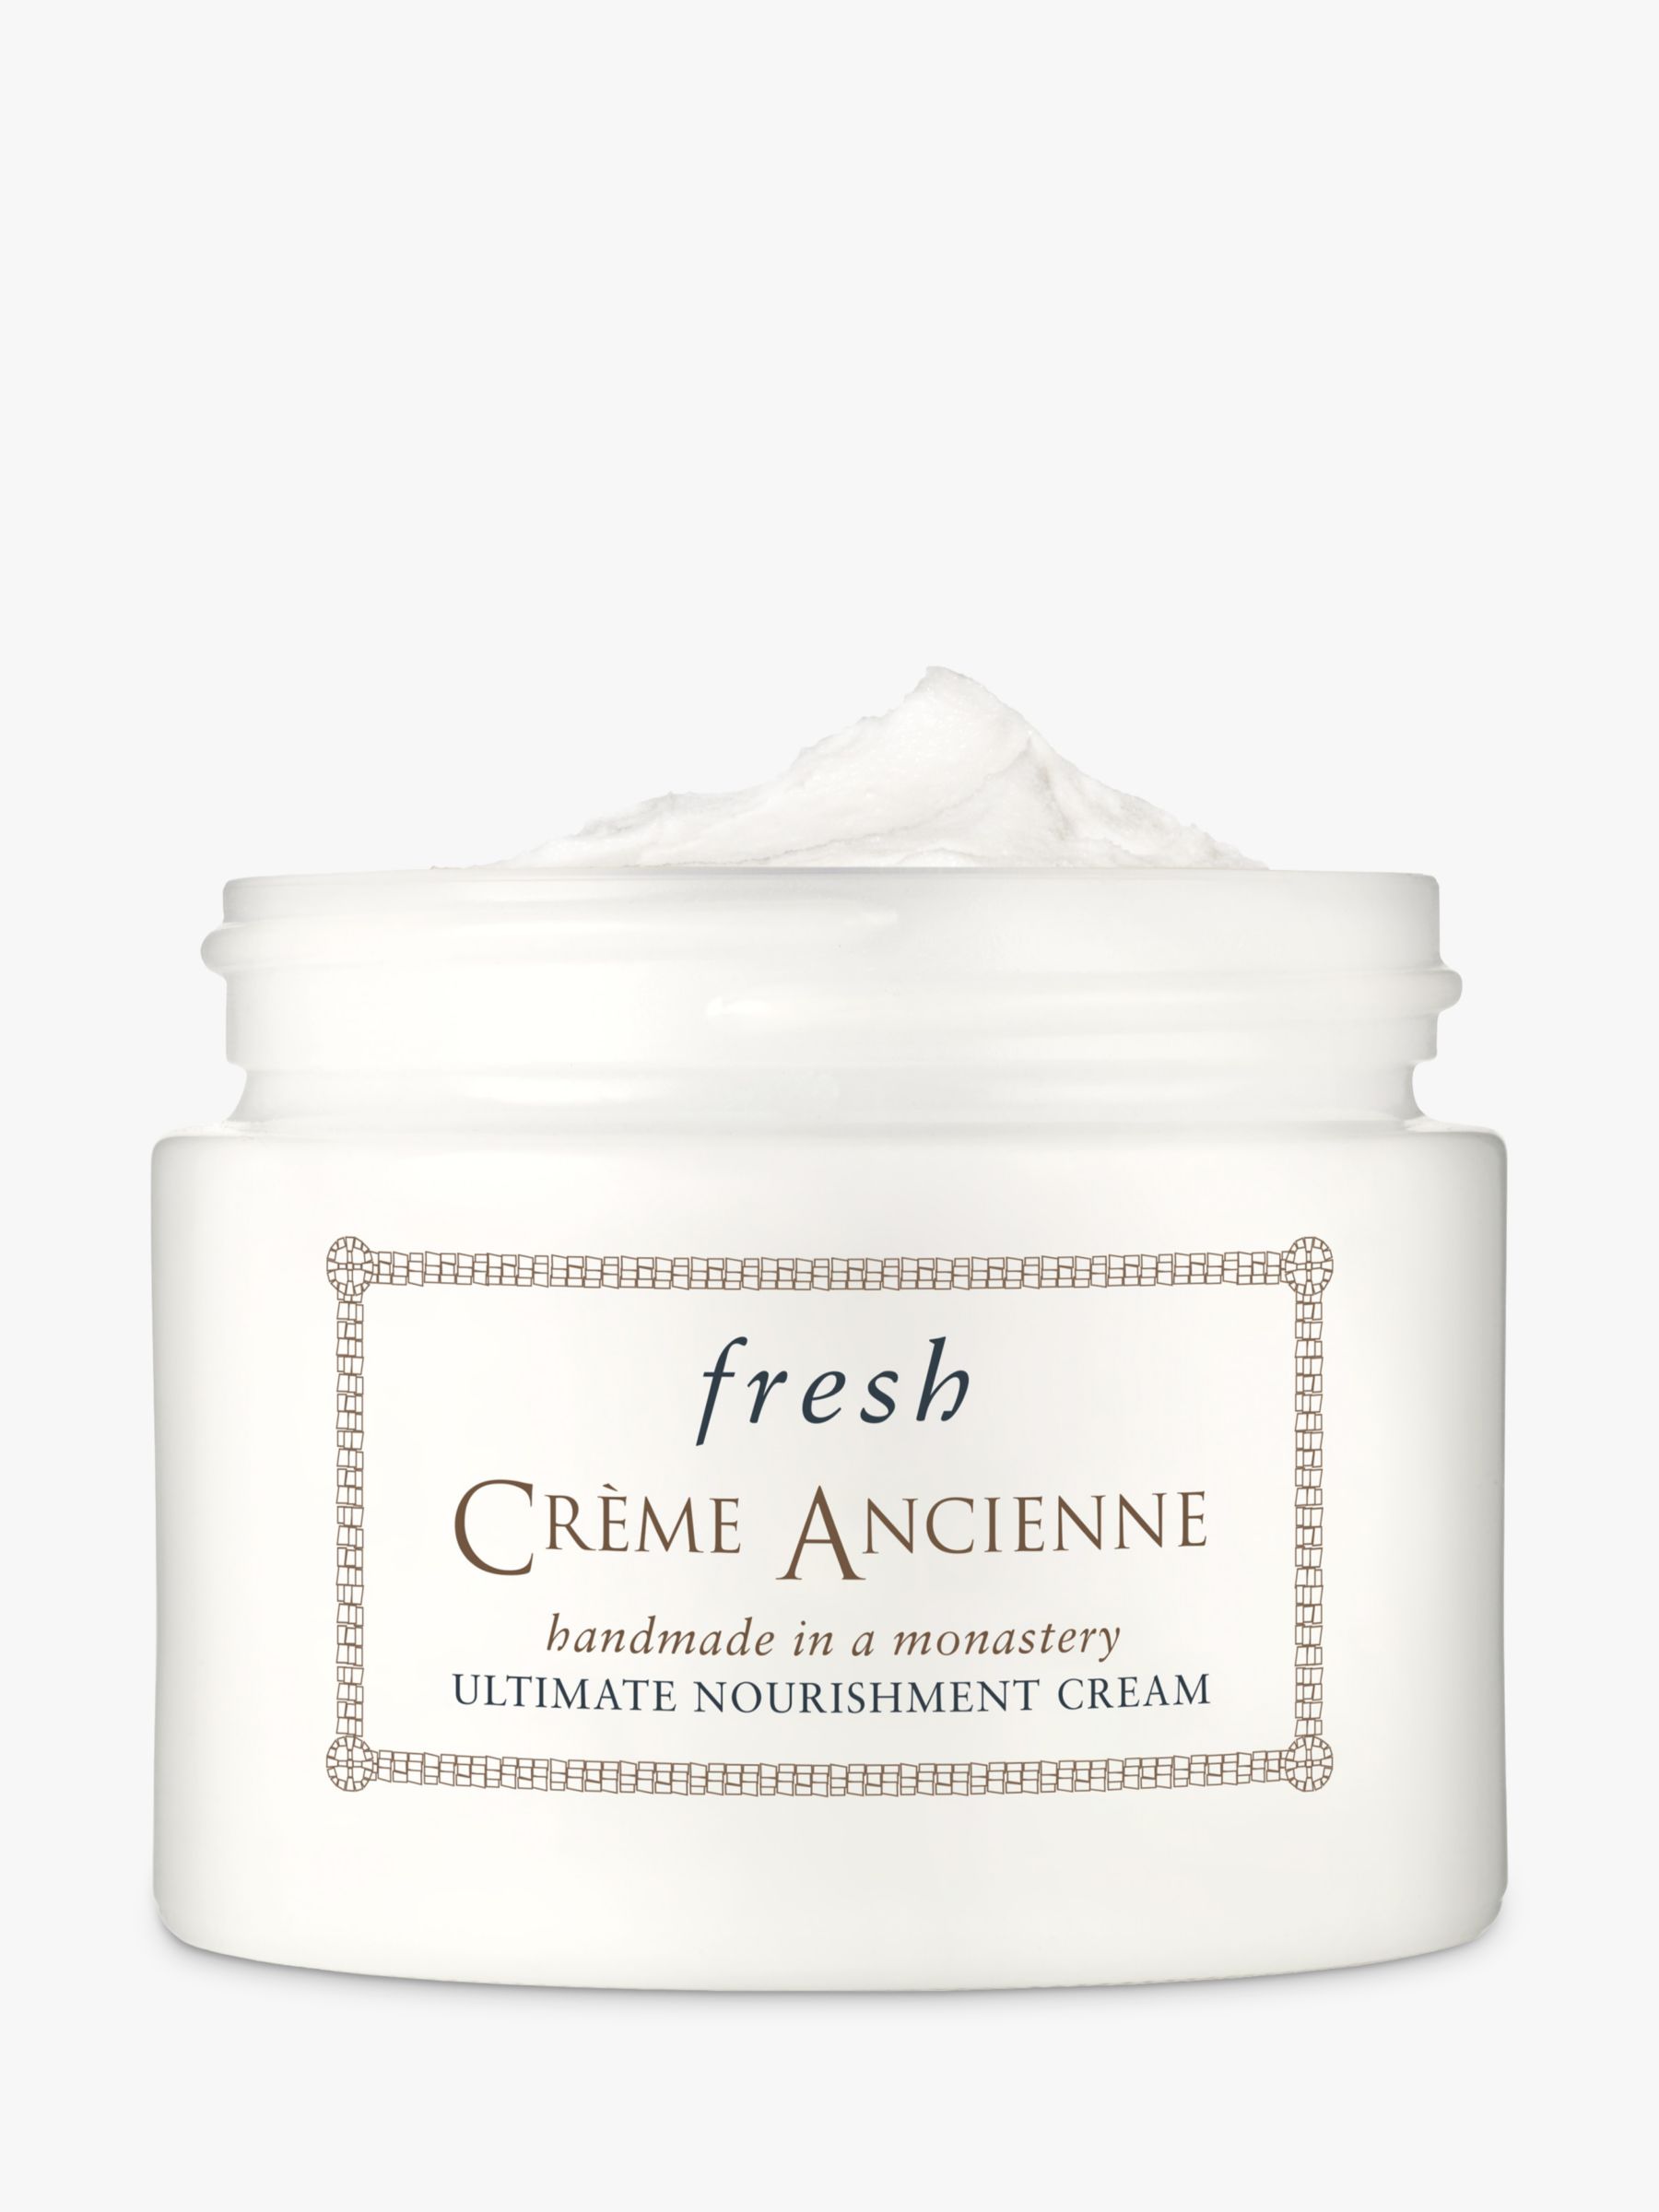 Fresh Crème Ancienne Ultimate Nourishment Cream, 30g 1